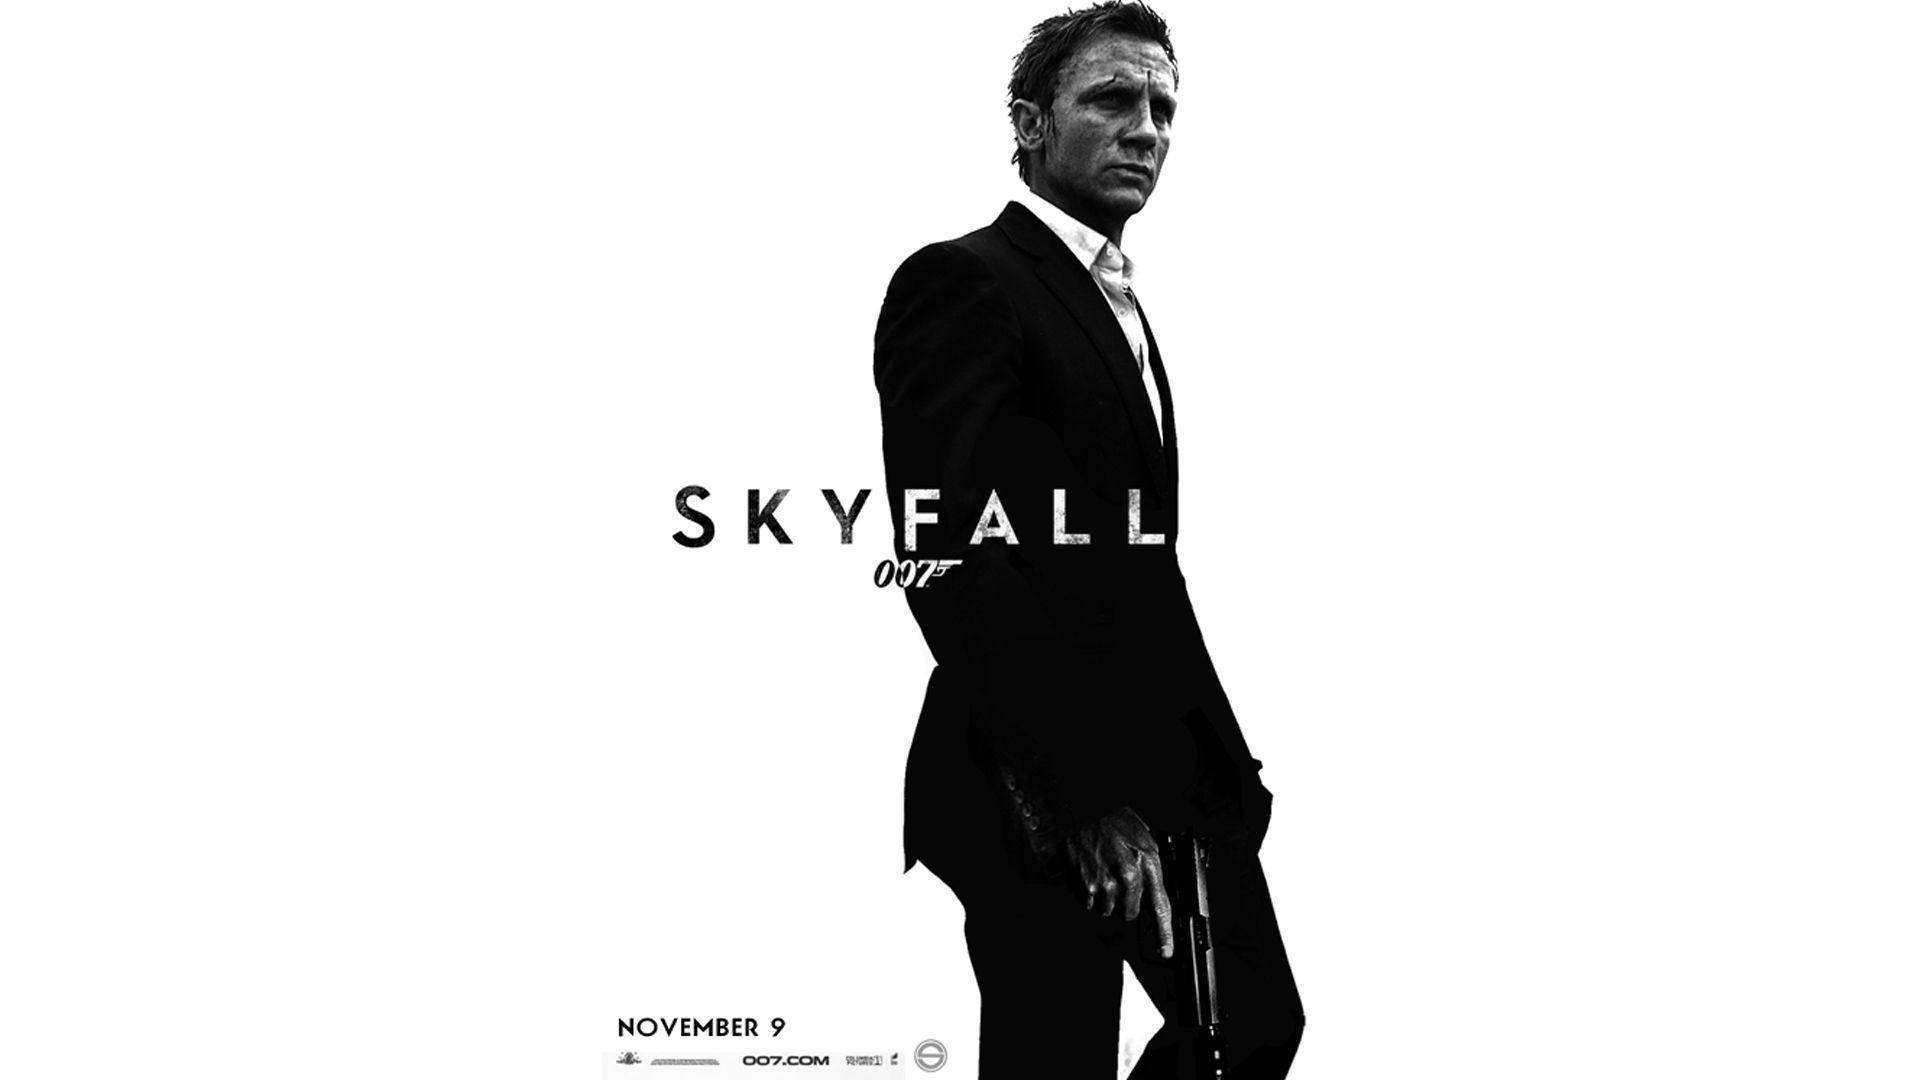 James Bond Skyfall Movie Poster